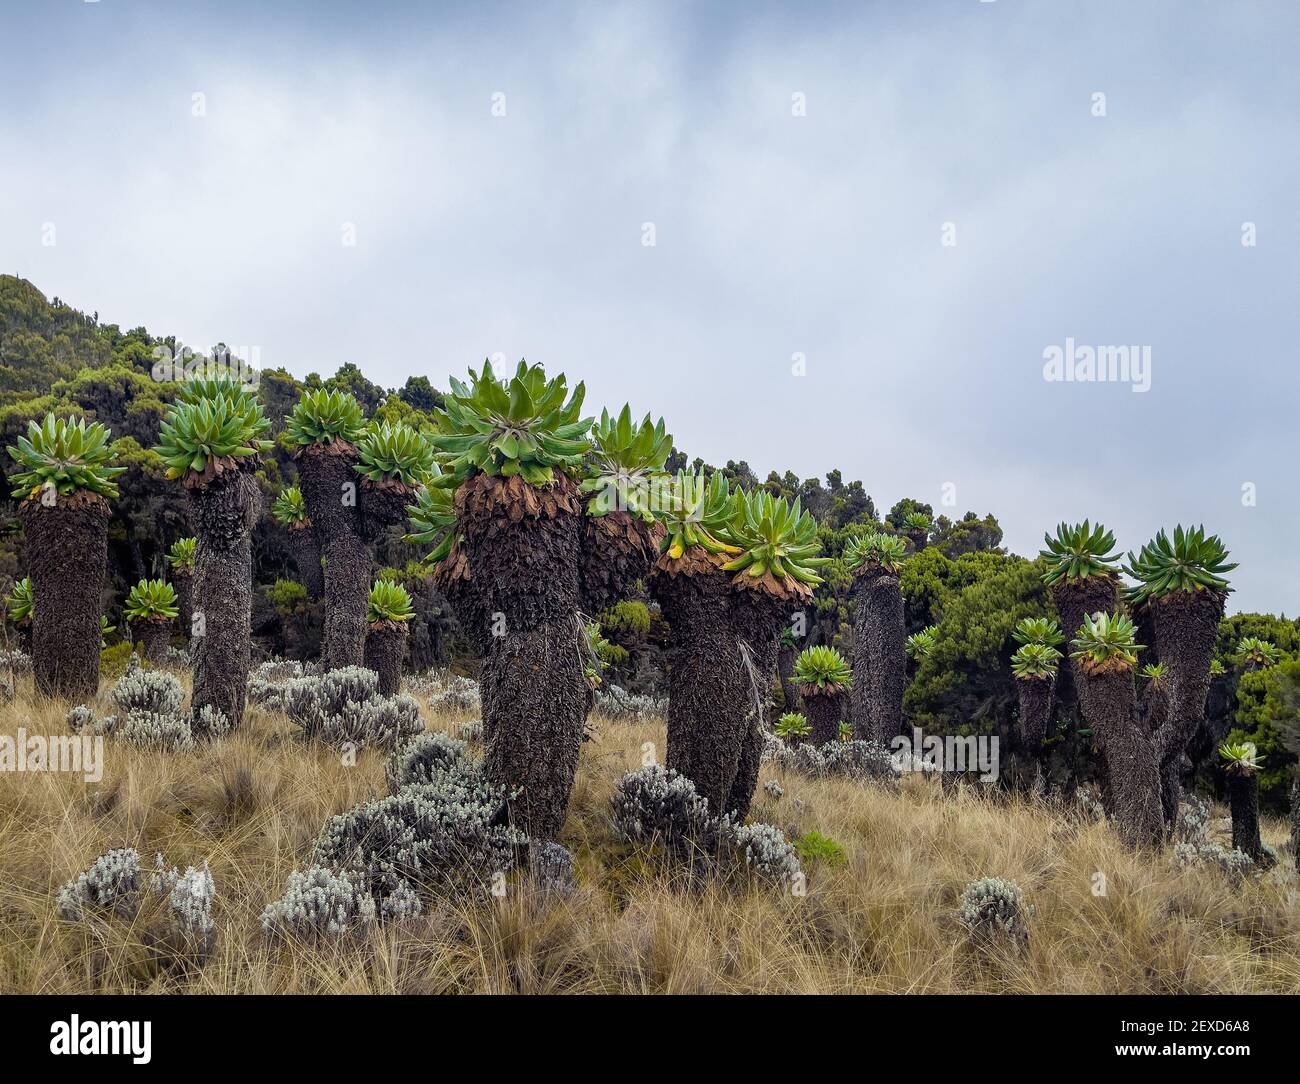 Dendrosenecio kilimanjari - Hochgebirgsmoorzonen einzigartige Pflanze. Es handelt sich um einen riesigen Erdboden, der auf dem Kilimandscharo in Afrika, Tansania, gefunden wurde. Barranc Stockfoto